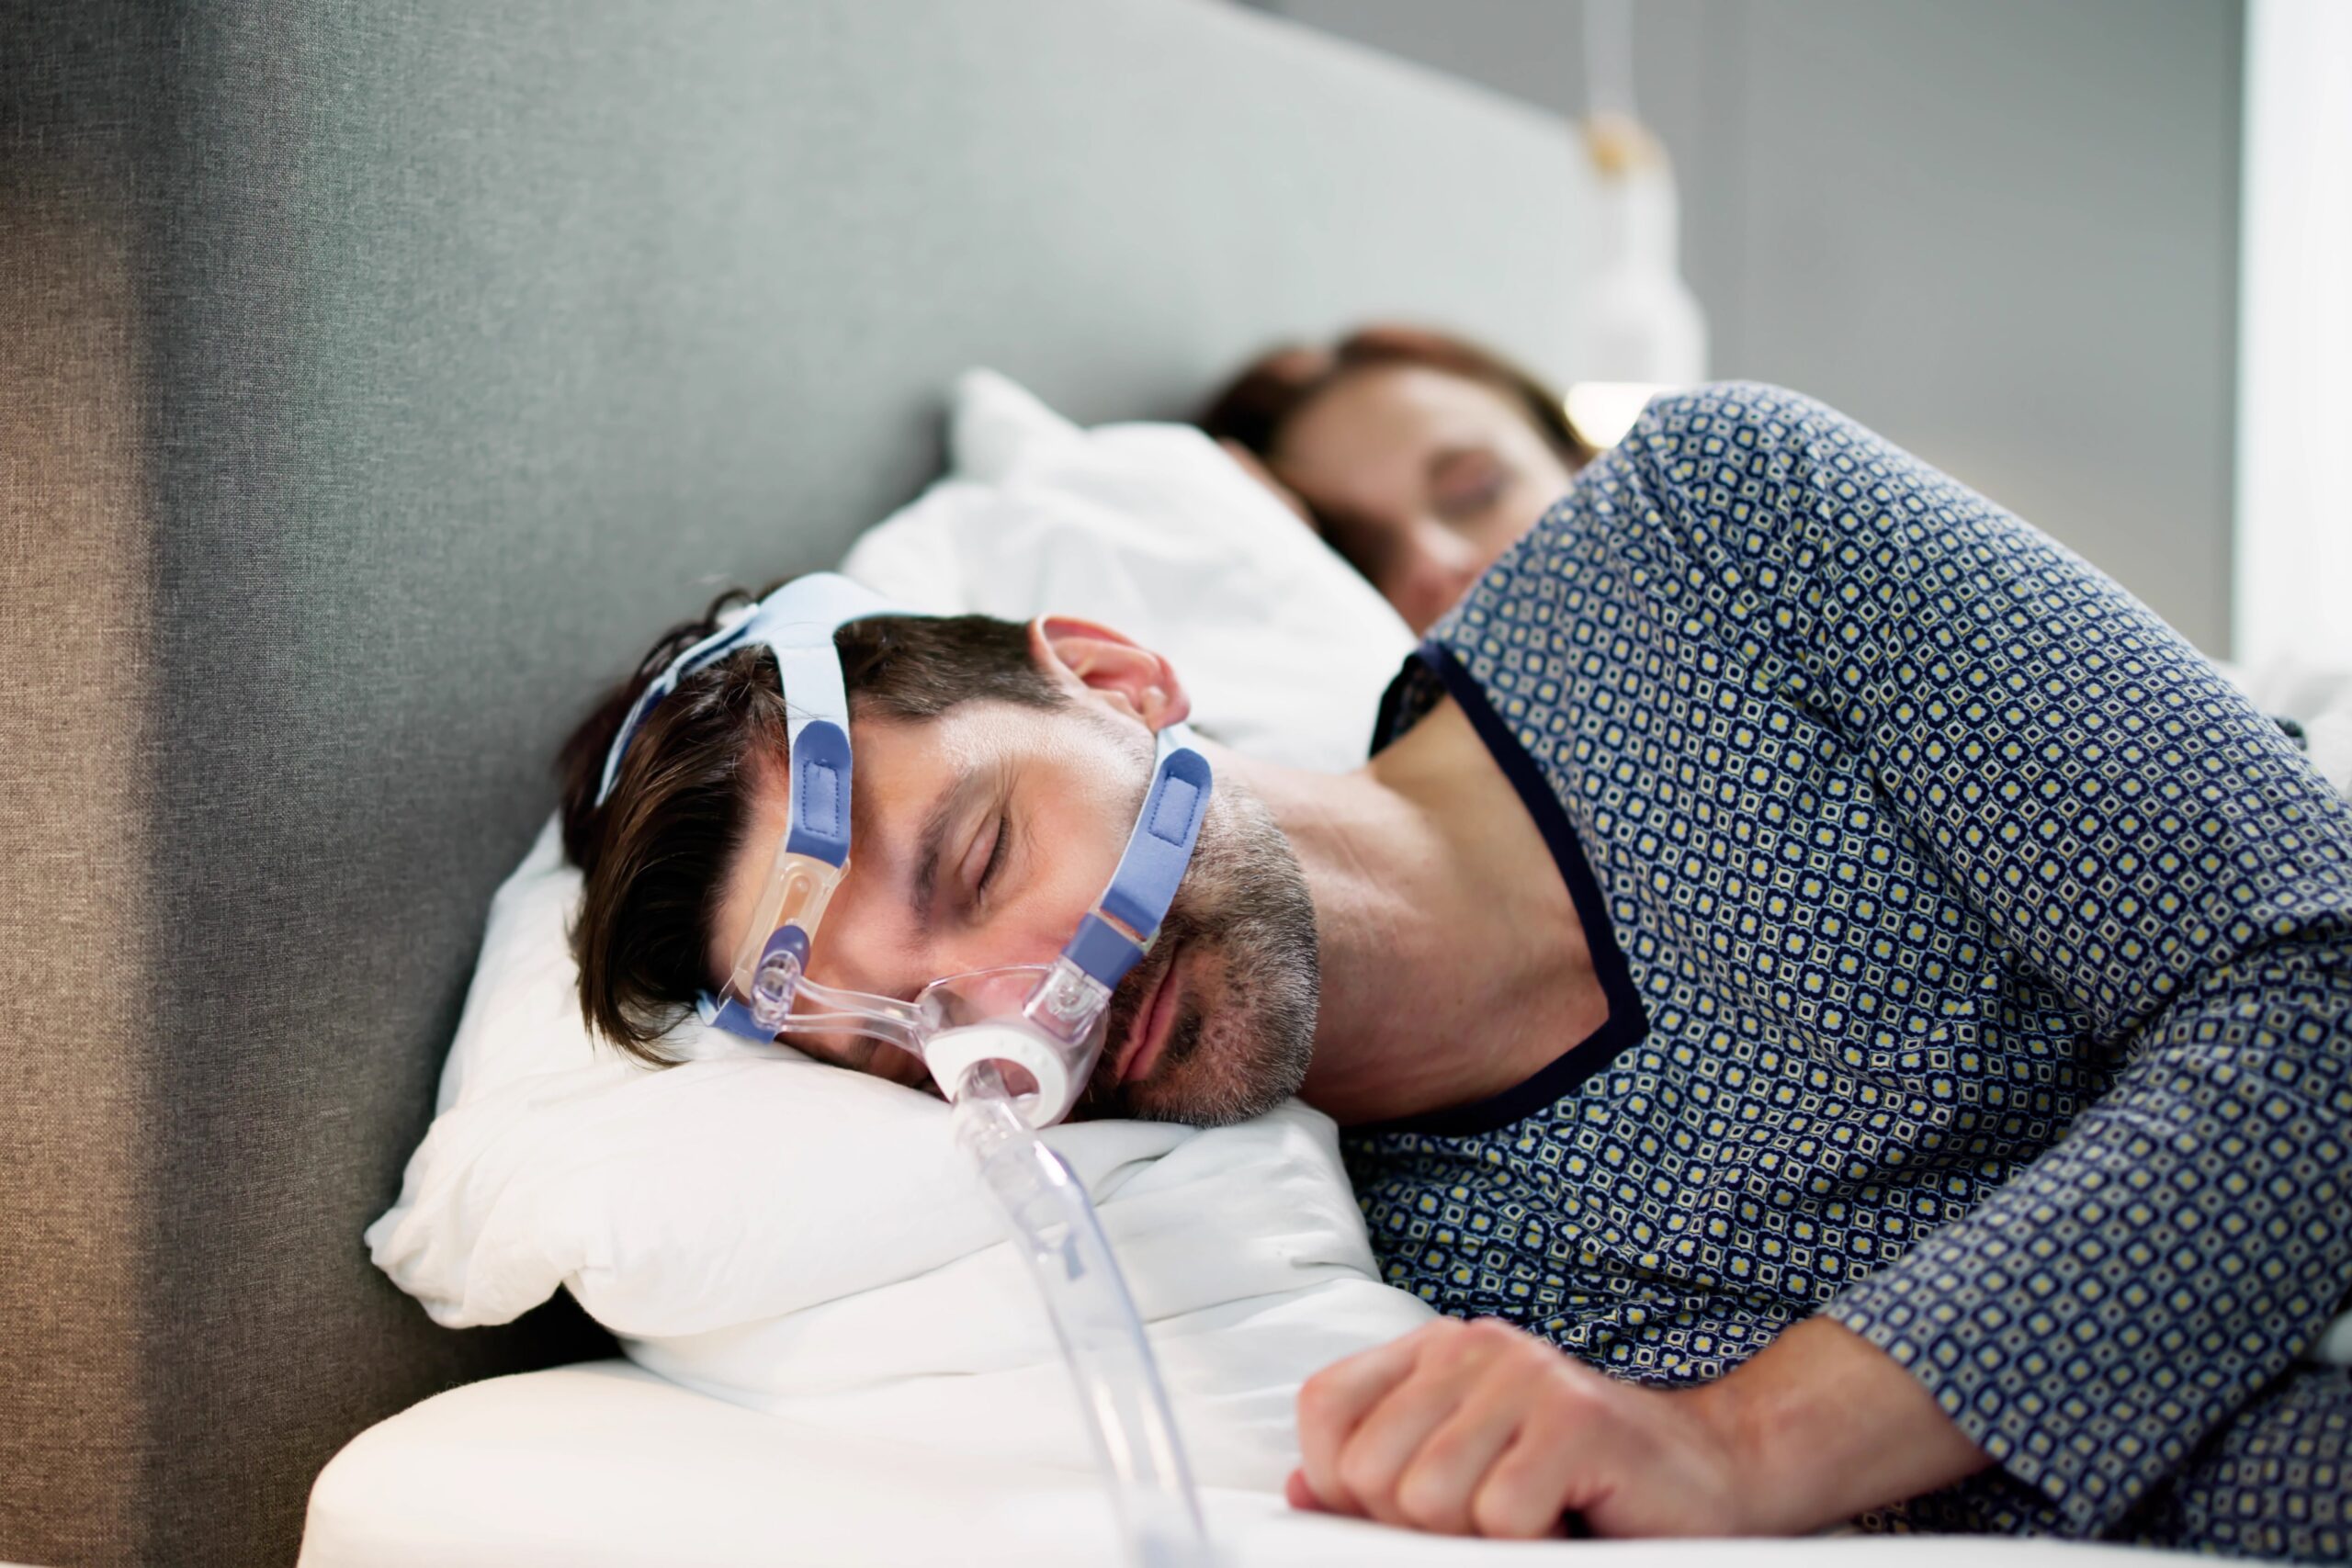 sleep apnea treatment clifton tx, meridian tx